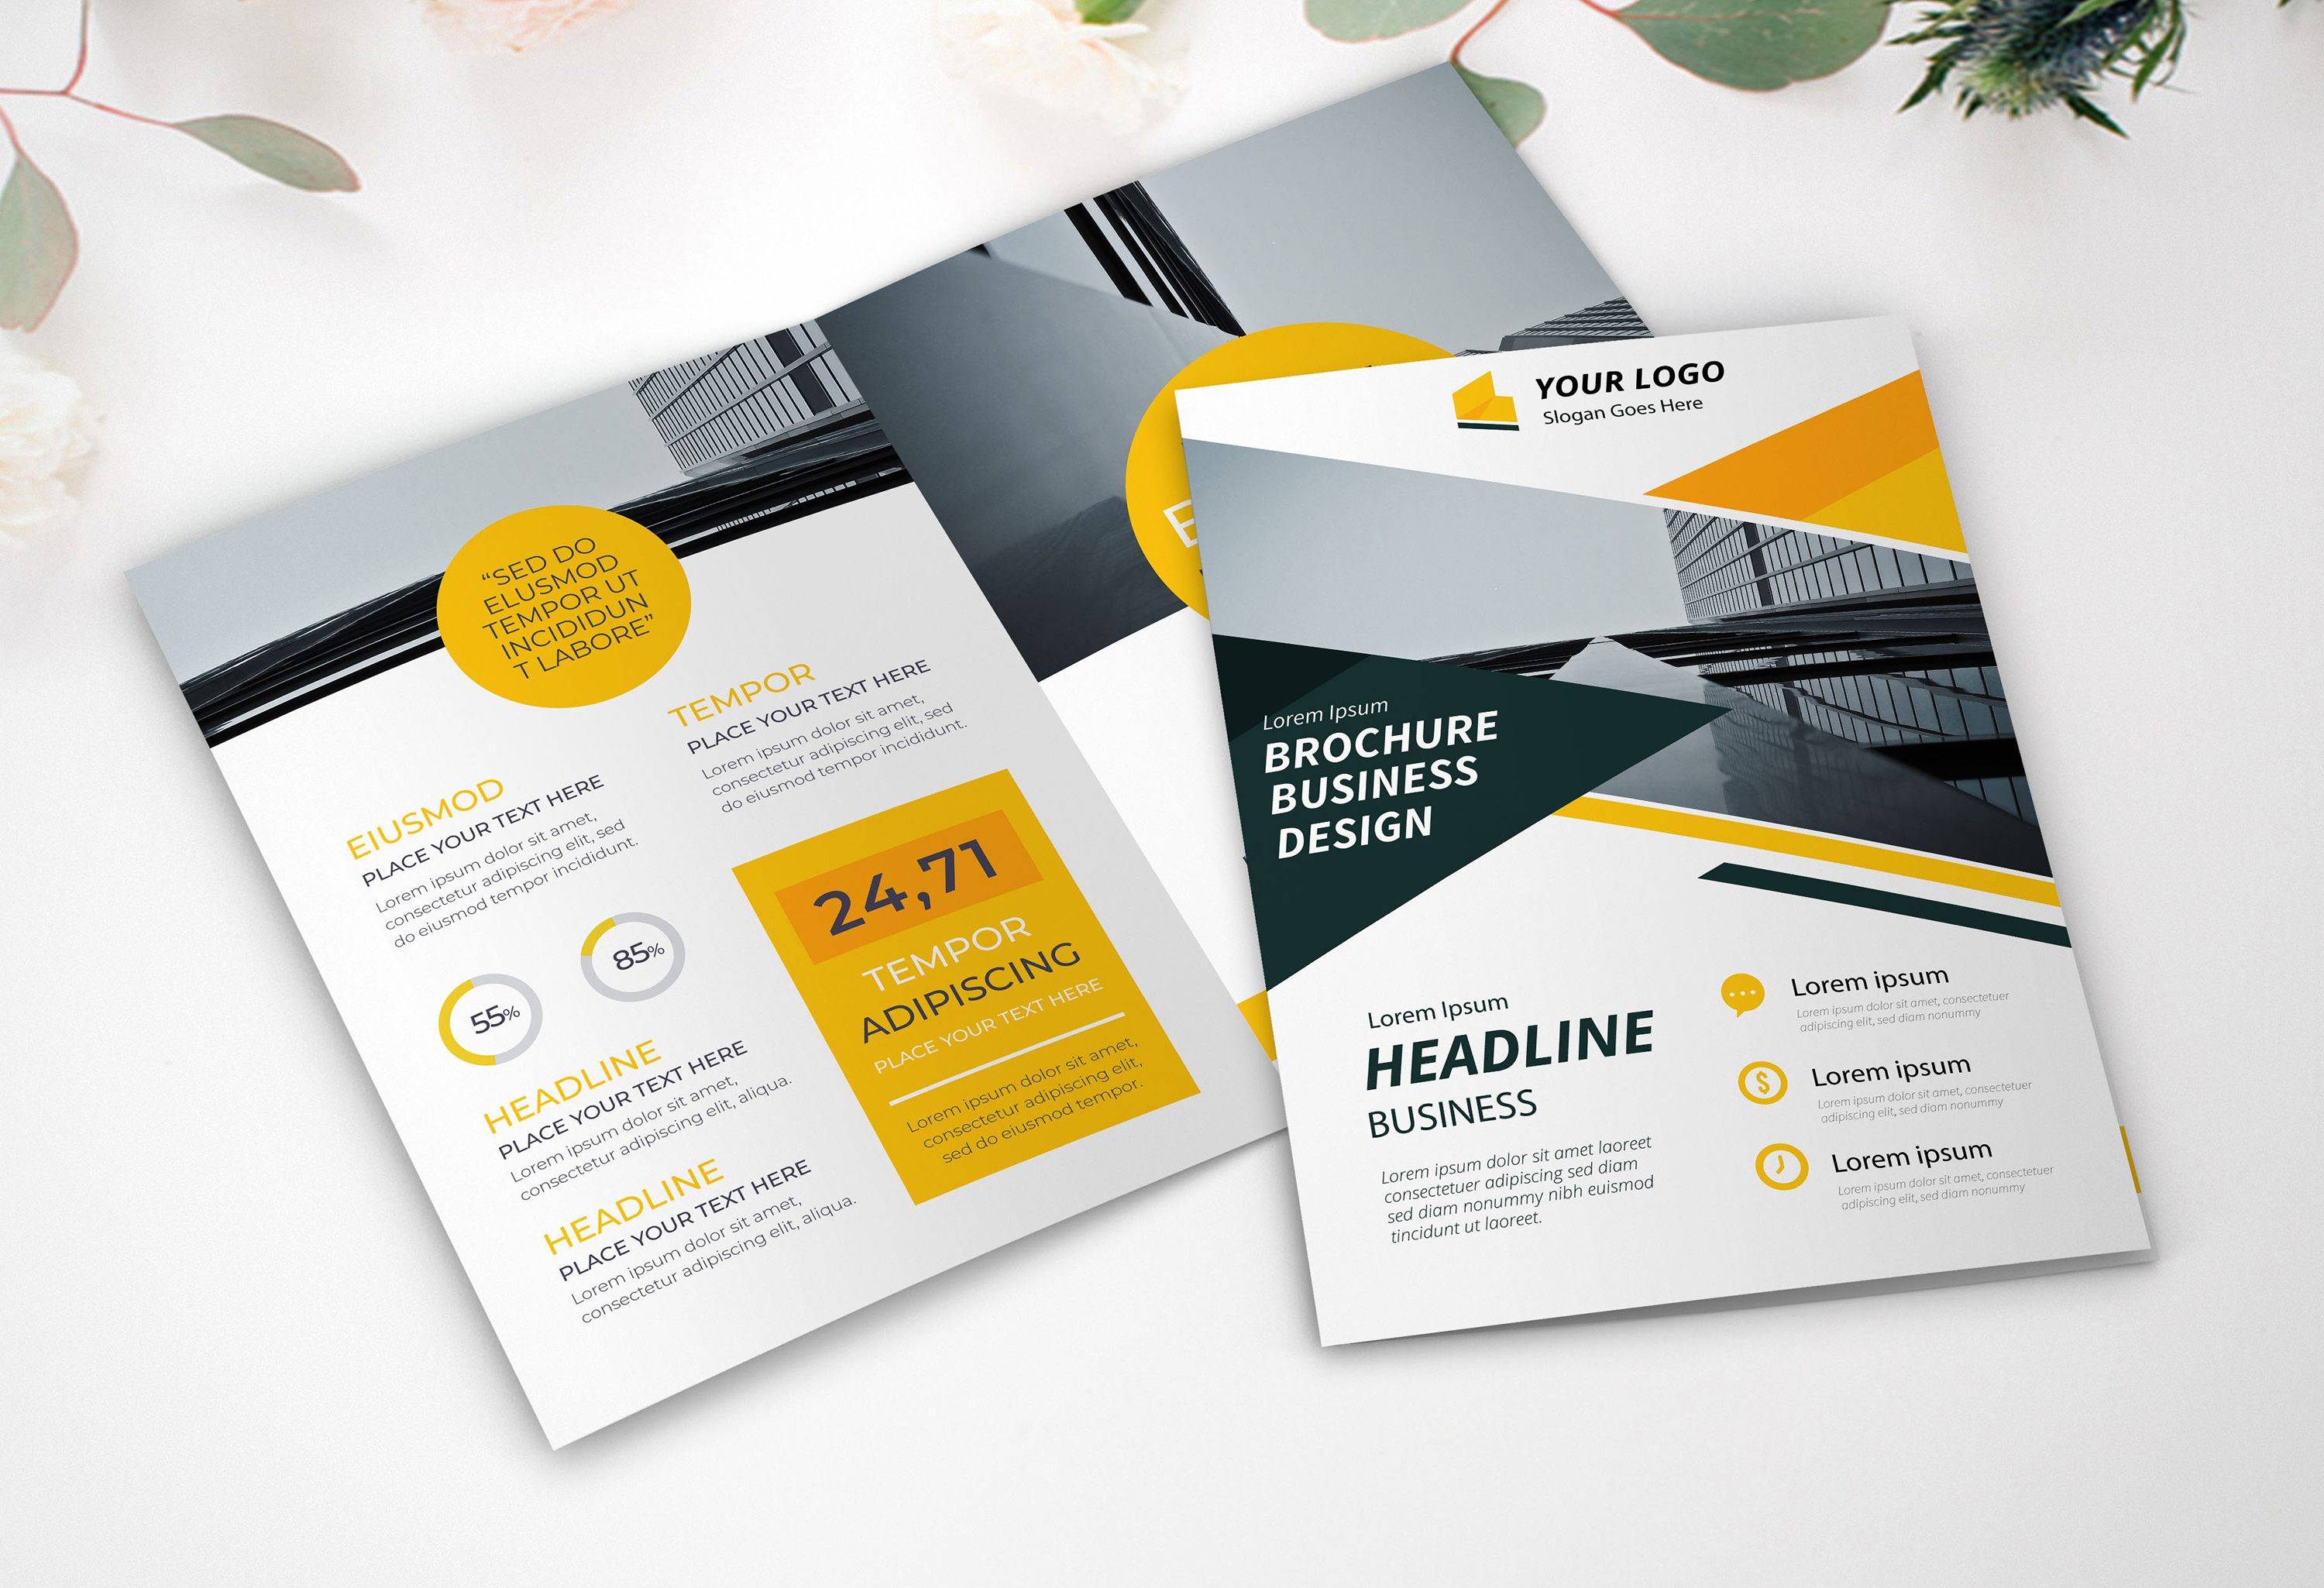 Design Company Profile Business Brochure, Or Annual Report